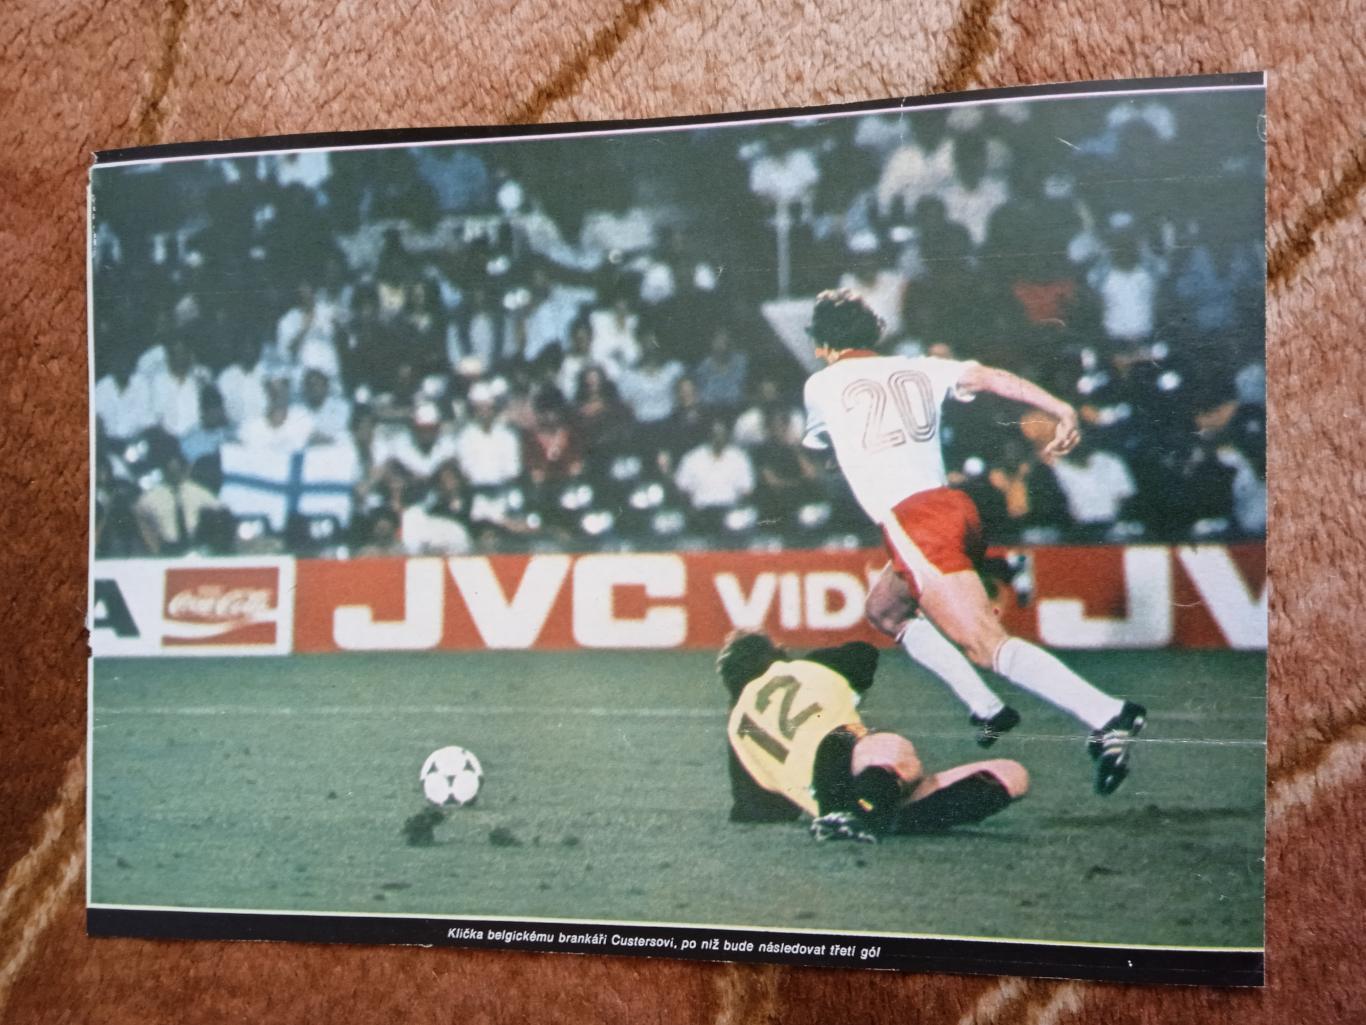 Фото.Футбол.Чемпионат мира 1982.Испания.Польша - Бельгия.З.Бонек.Журнал Стадион.